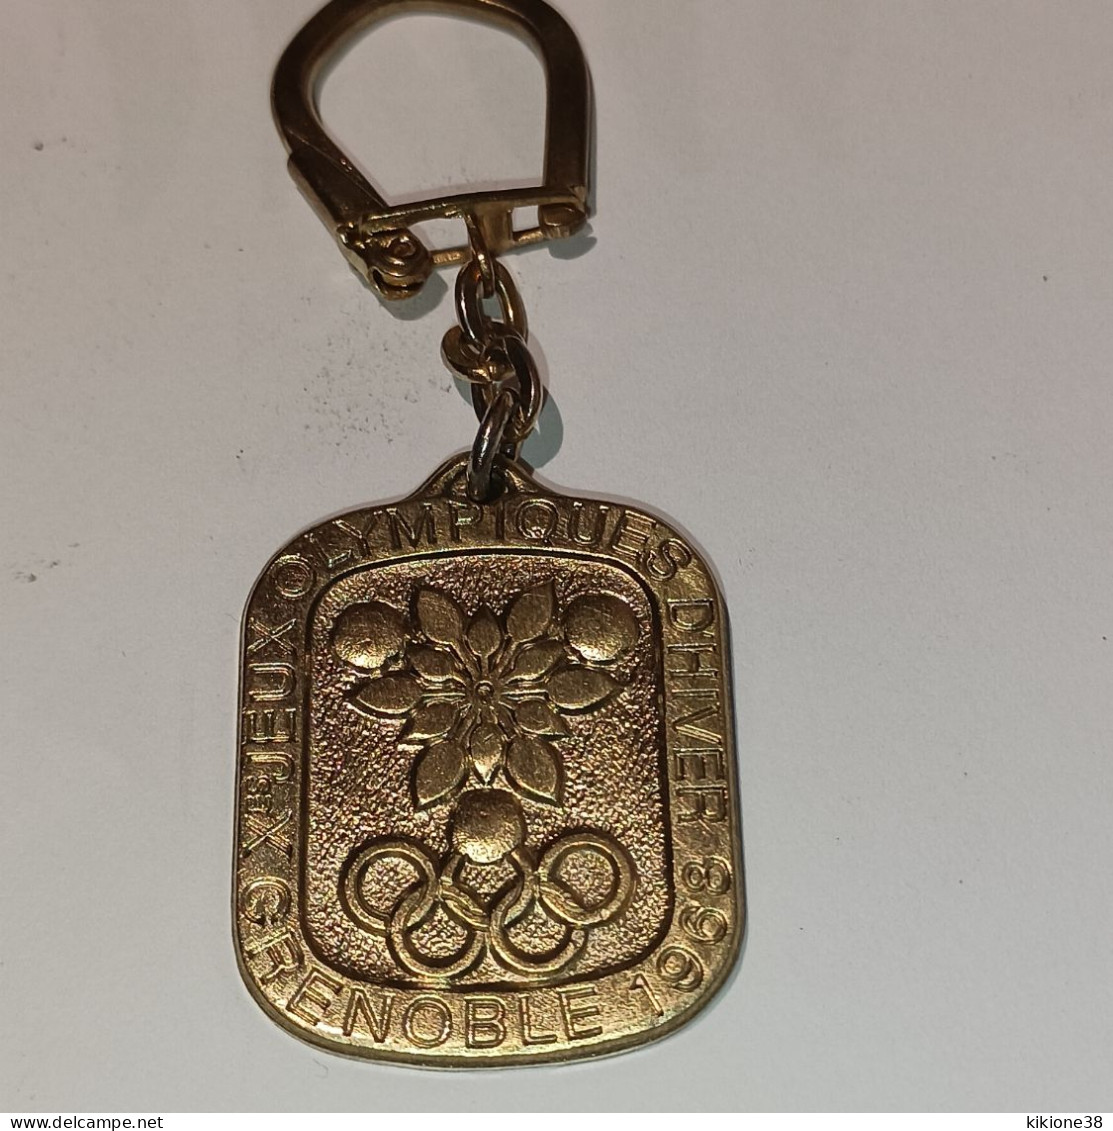 Porte Clé Rare En BRONZE - Jeux Olympiques D'hiver GRENOBLE 68. Objet Souvenir, Médaille, Badge, Pin's. - Apparel, Souvenirs & Other